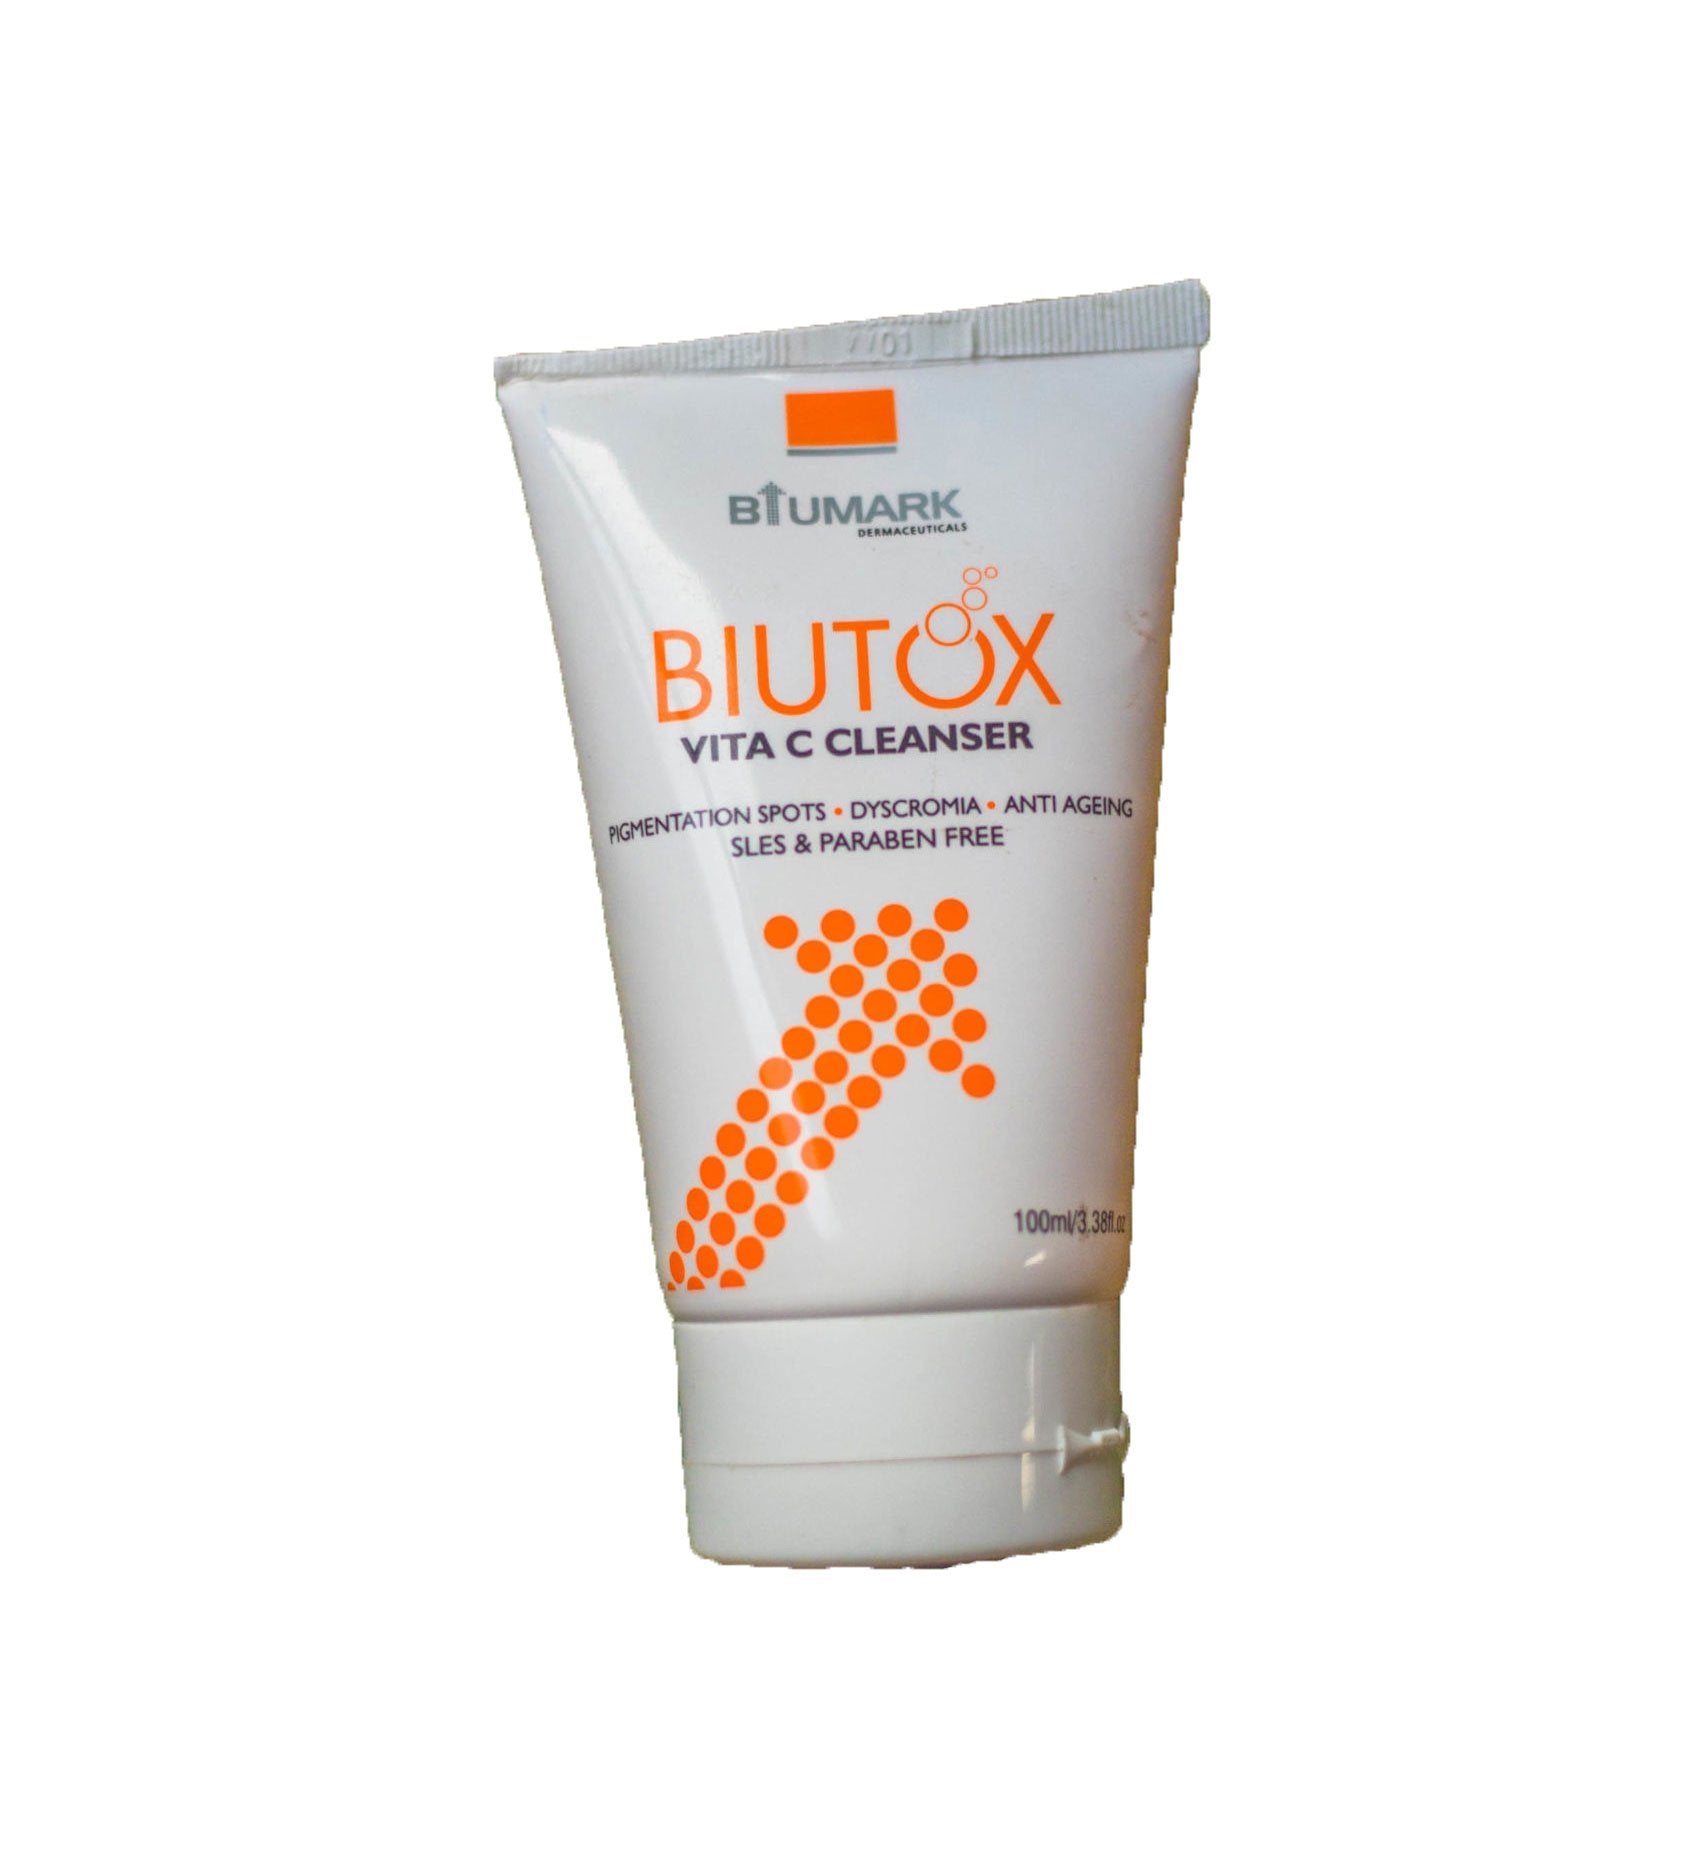 Biutox Vita C Cleanser - MySkinCare.in